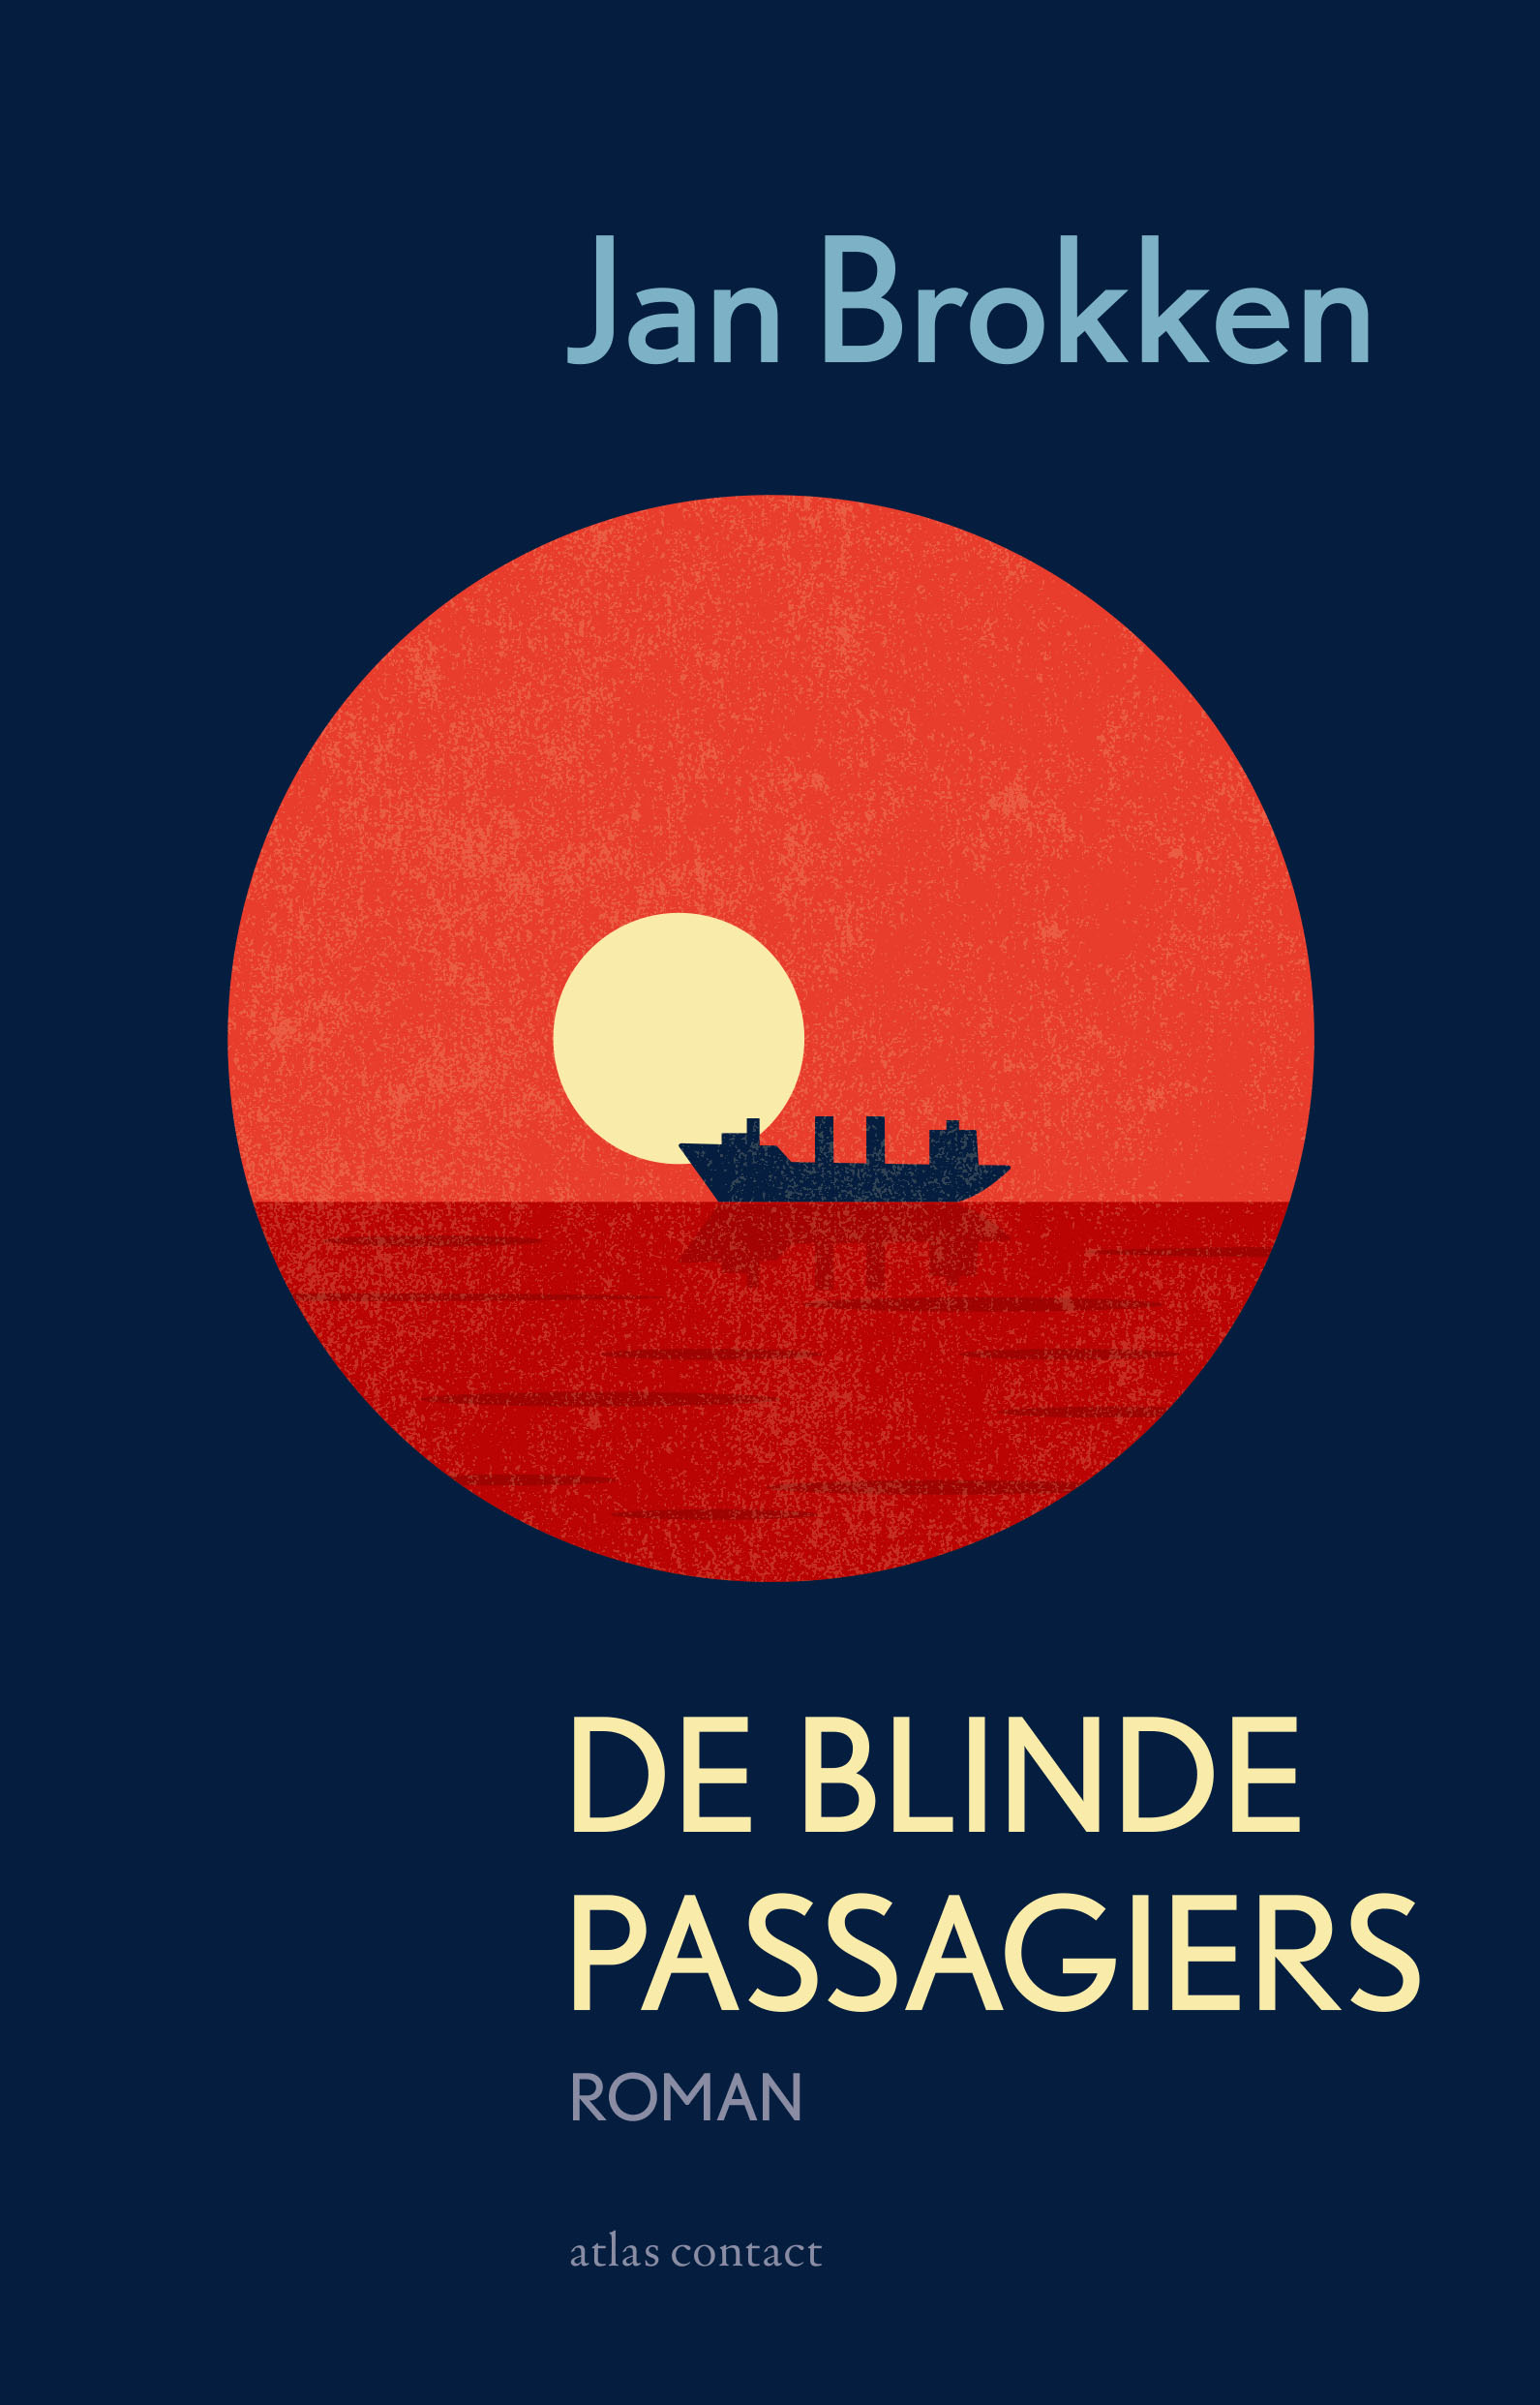 ‘[De blinde passagiers] is nog steeds brandend actueel.’ ★★★★ Lezersbespreking op Chicklit.nl